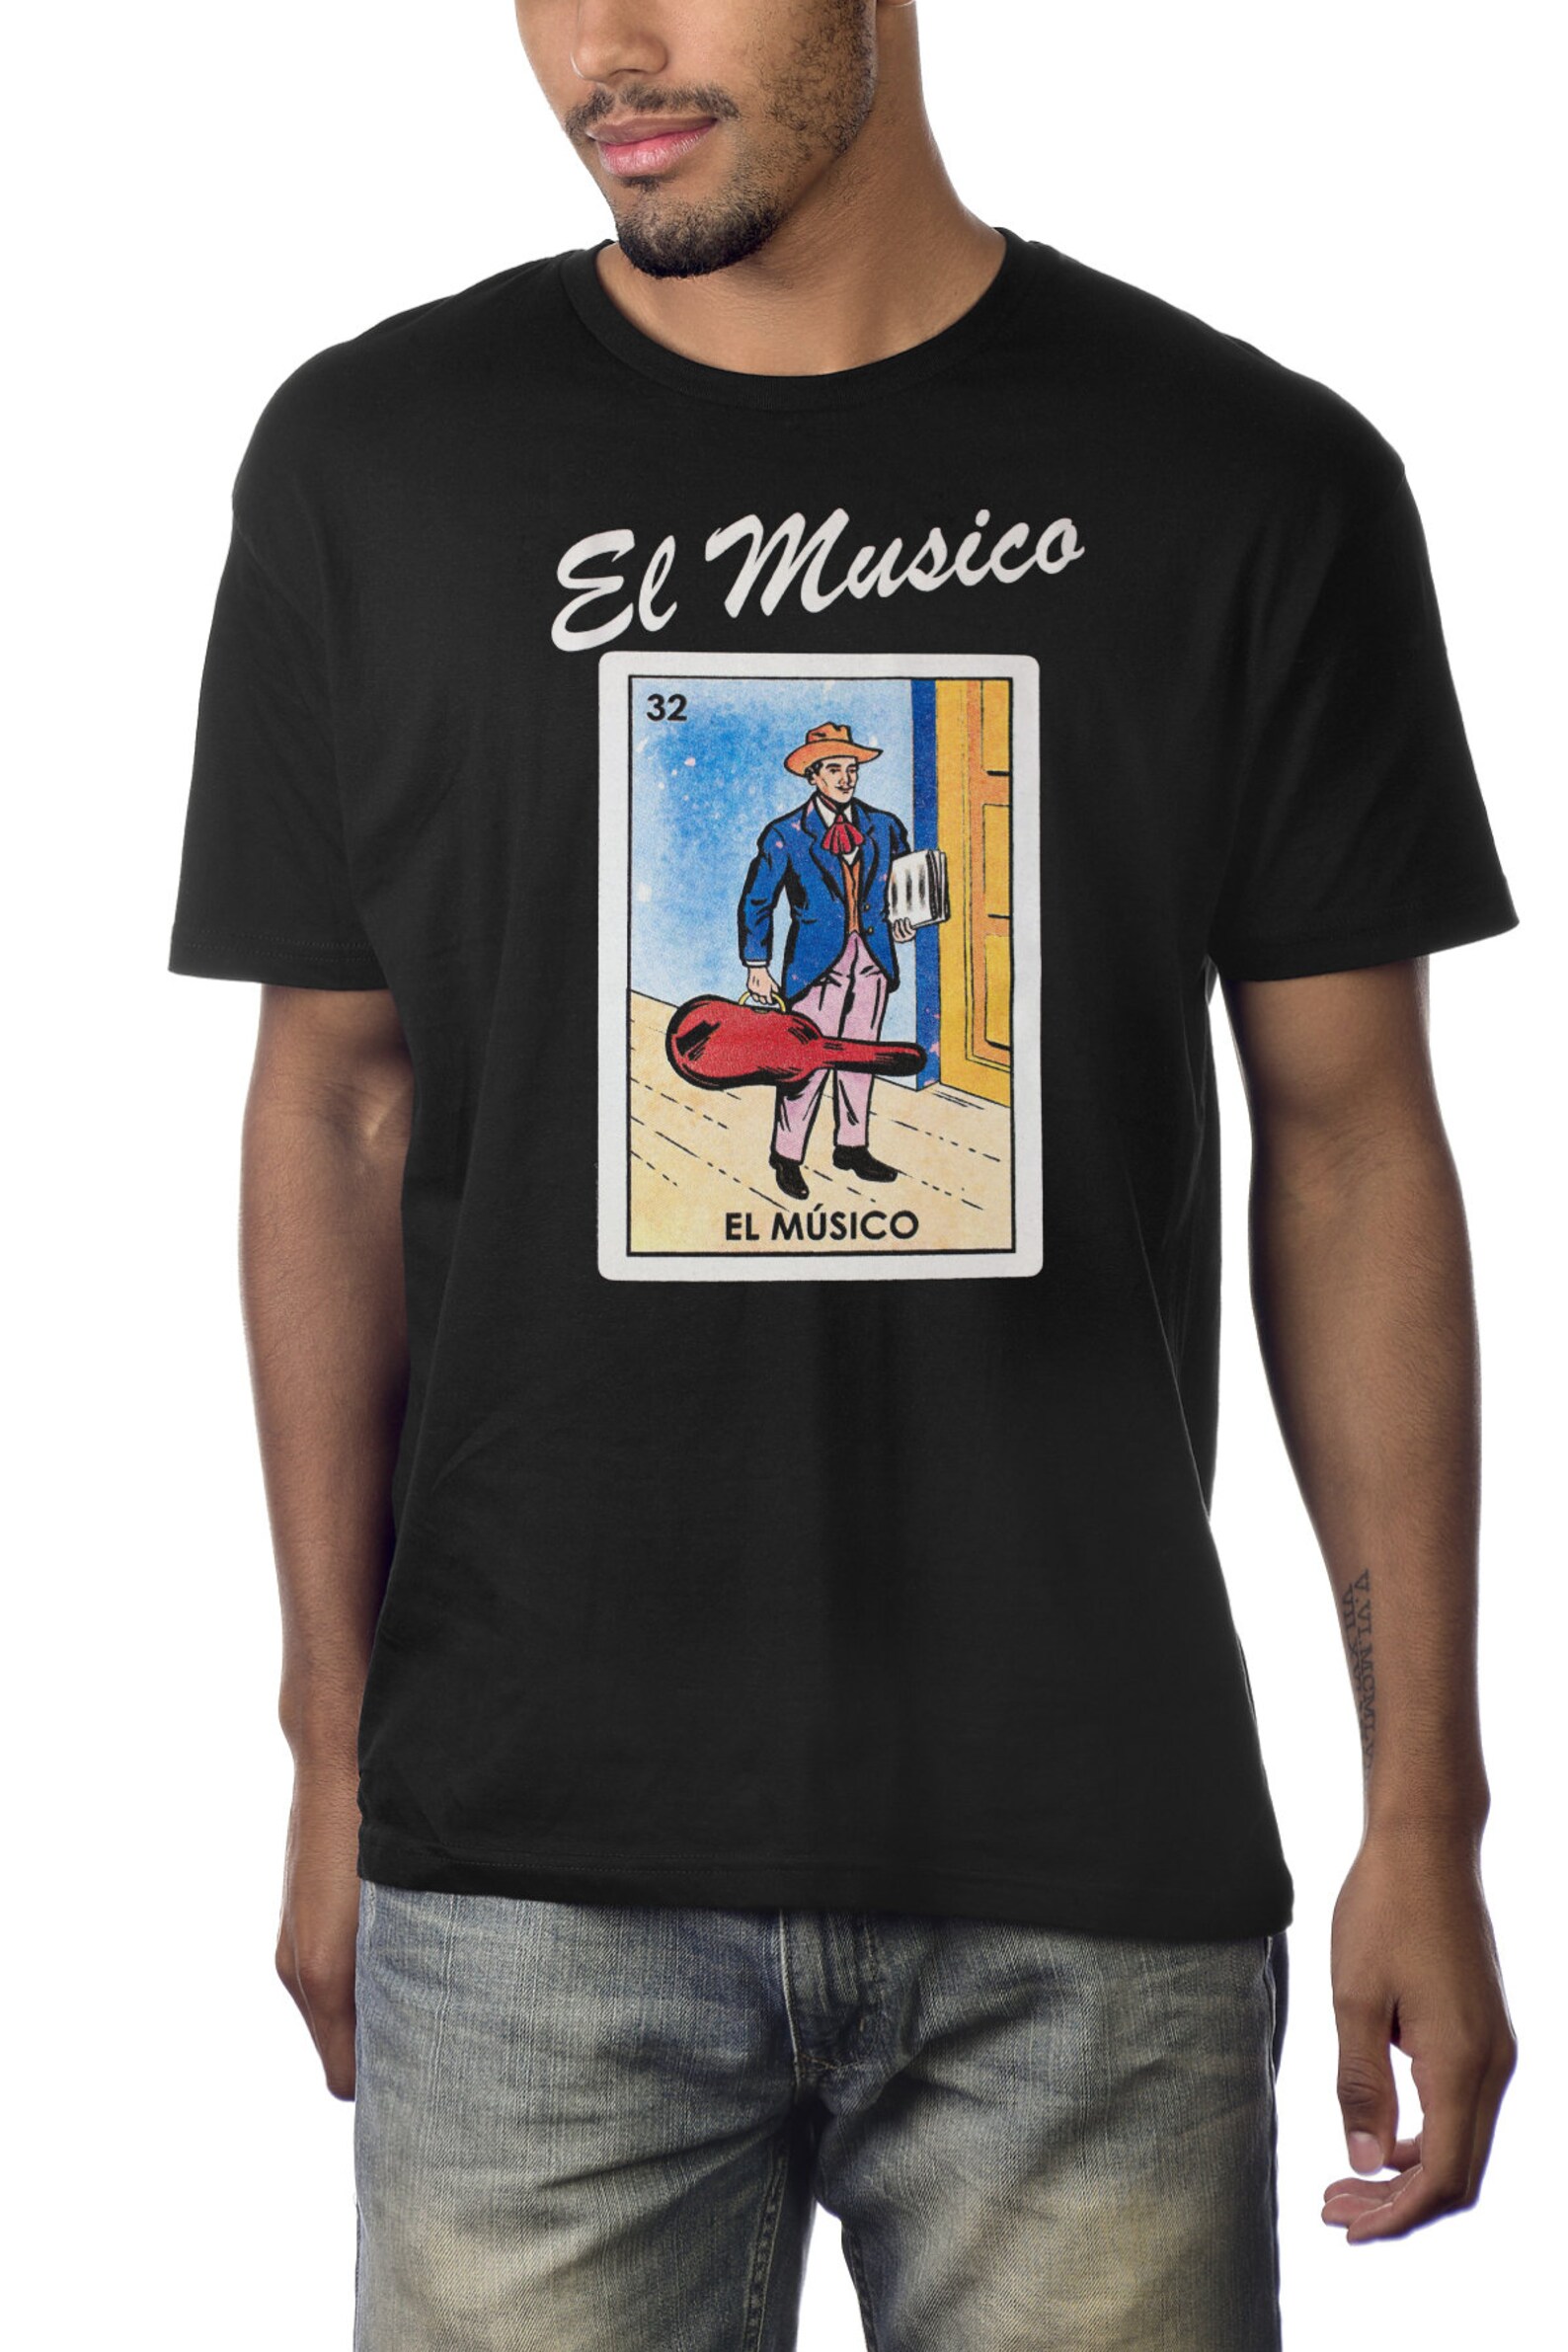 El Musico Loteria Mexican Bingo T-shirt Novelty Funny Family - Etsy Canada